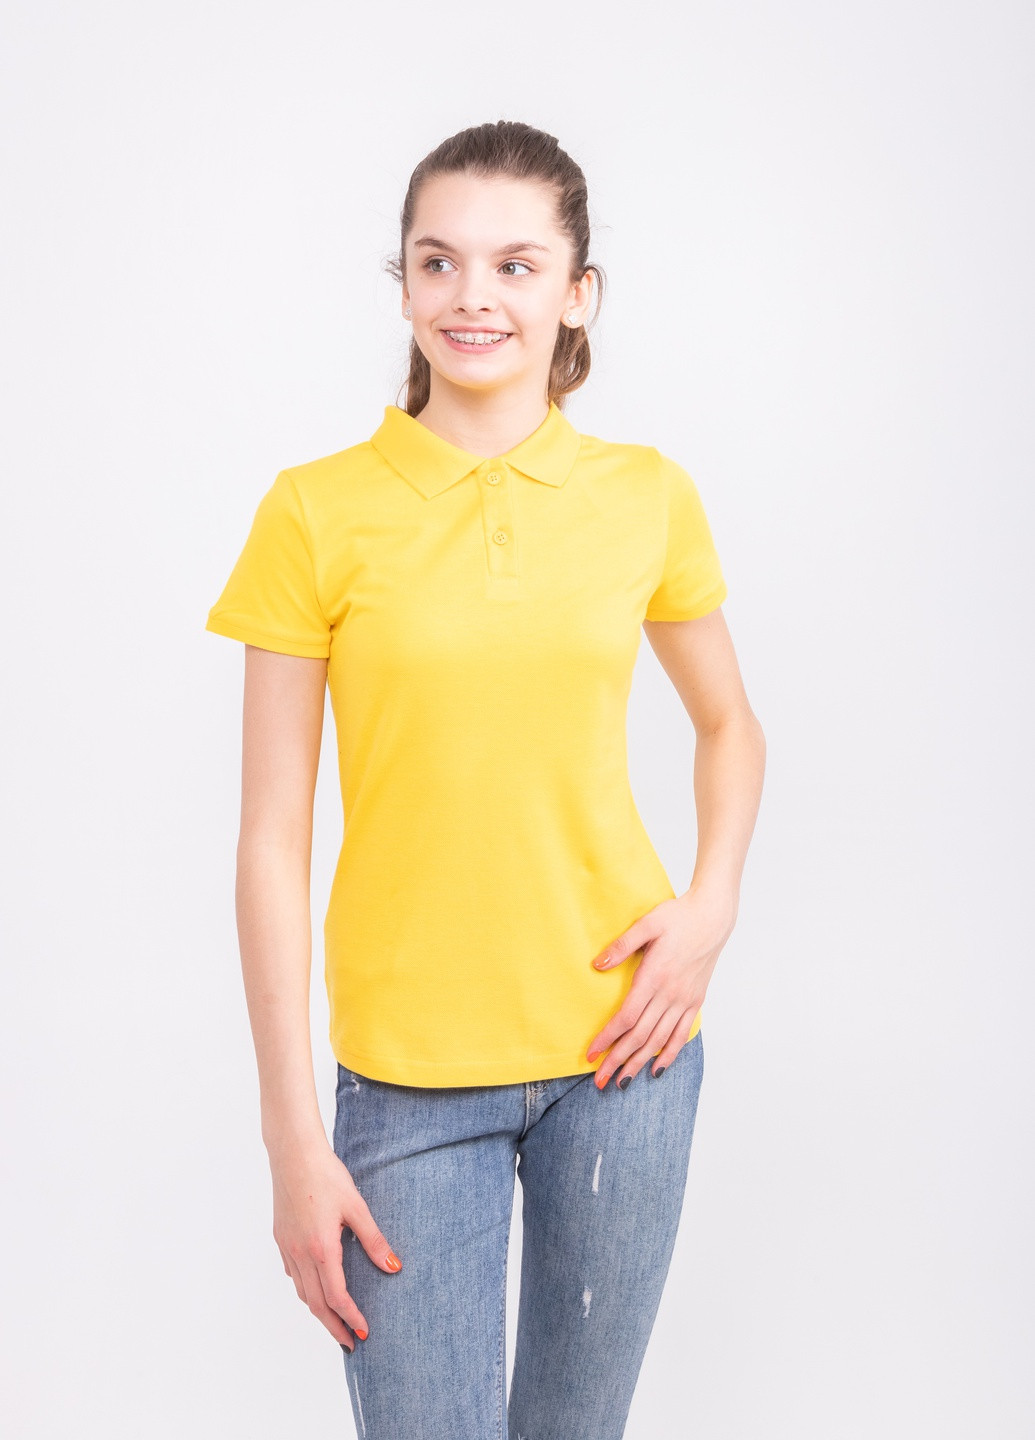 Желтая женская футболка-футболка поло женская TvoePolo однотонная